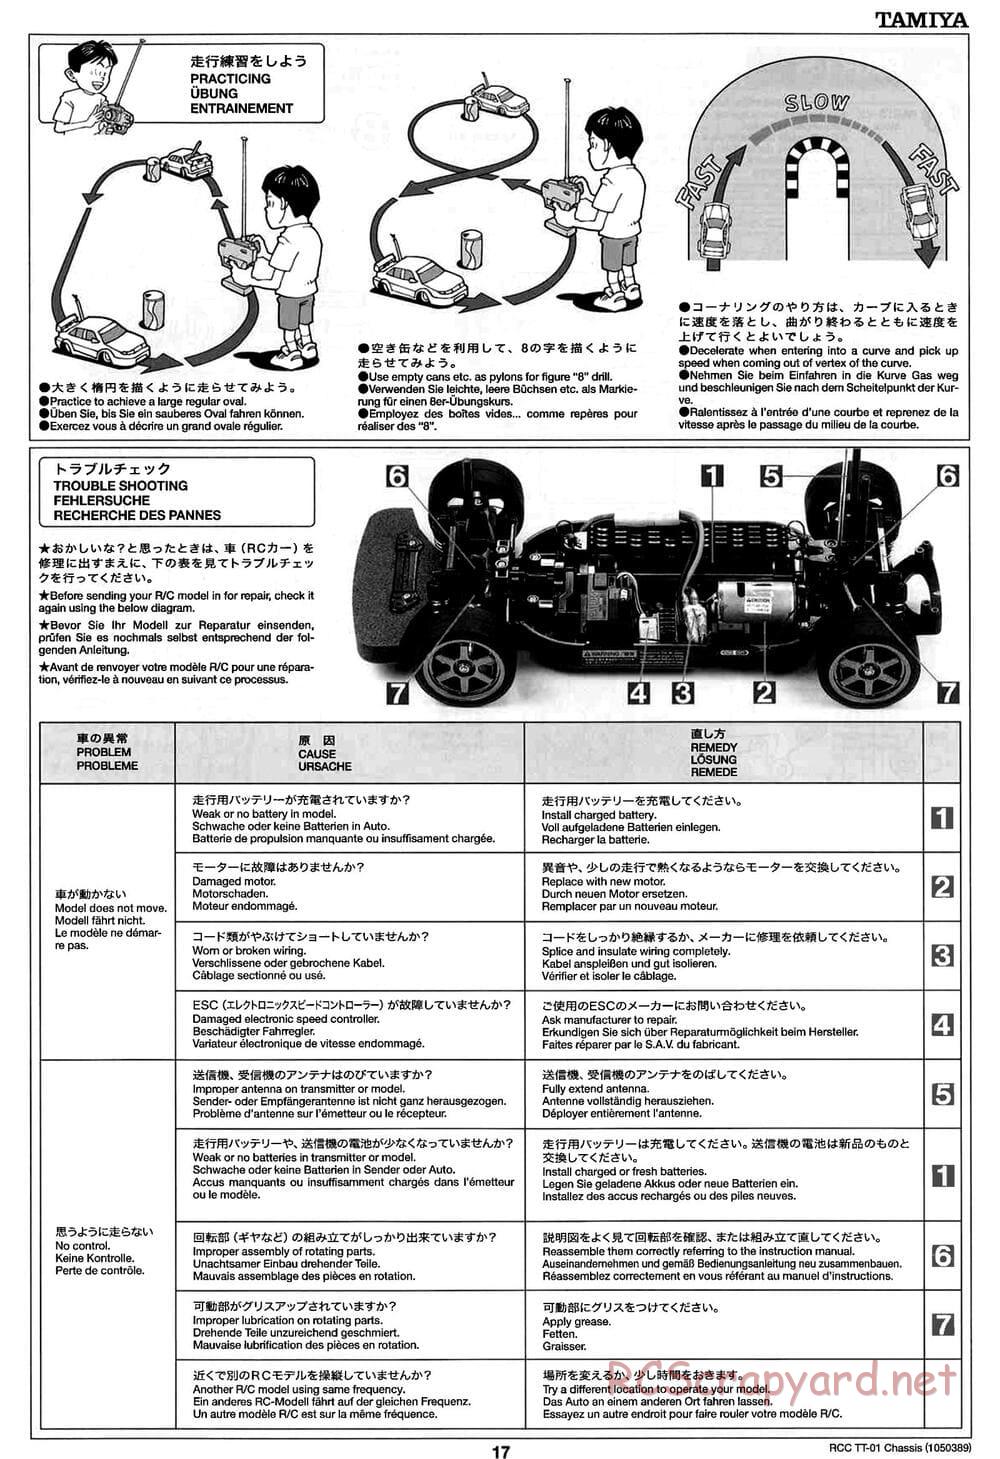 Tamiya - TT-01 Chassis - Manual - Page 17